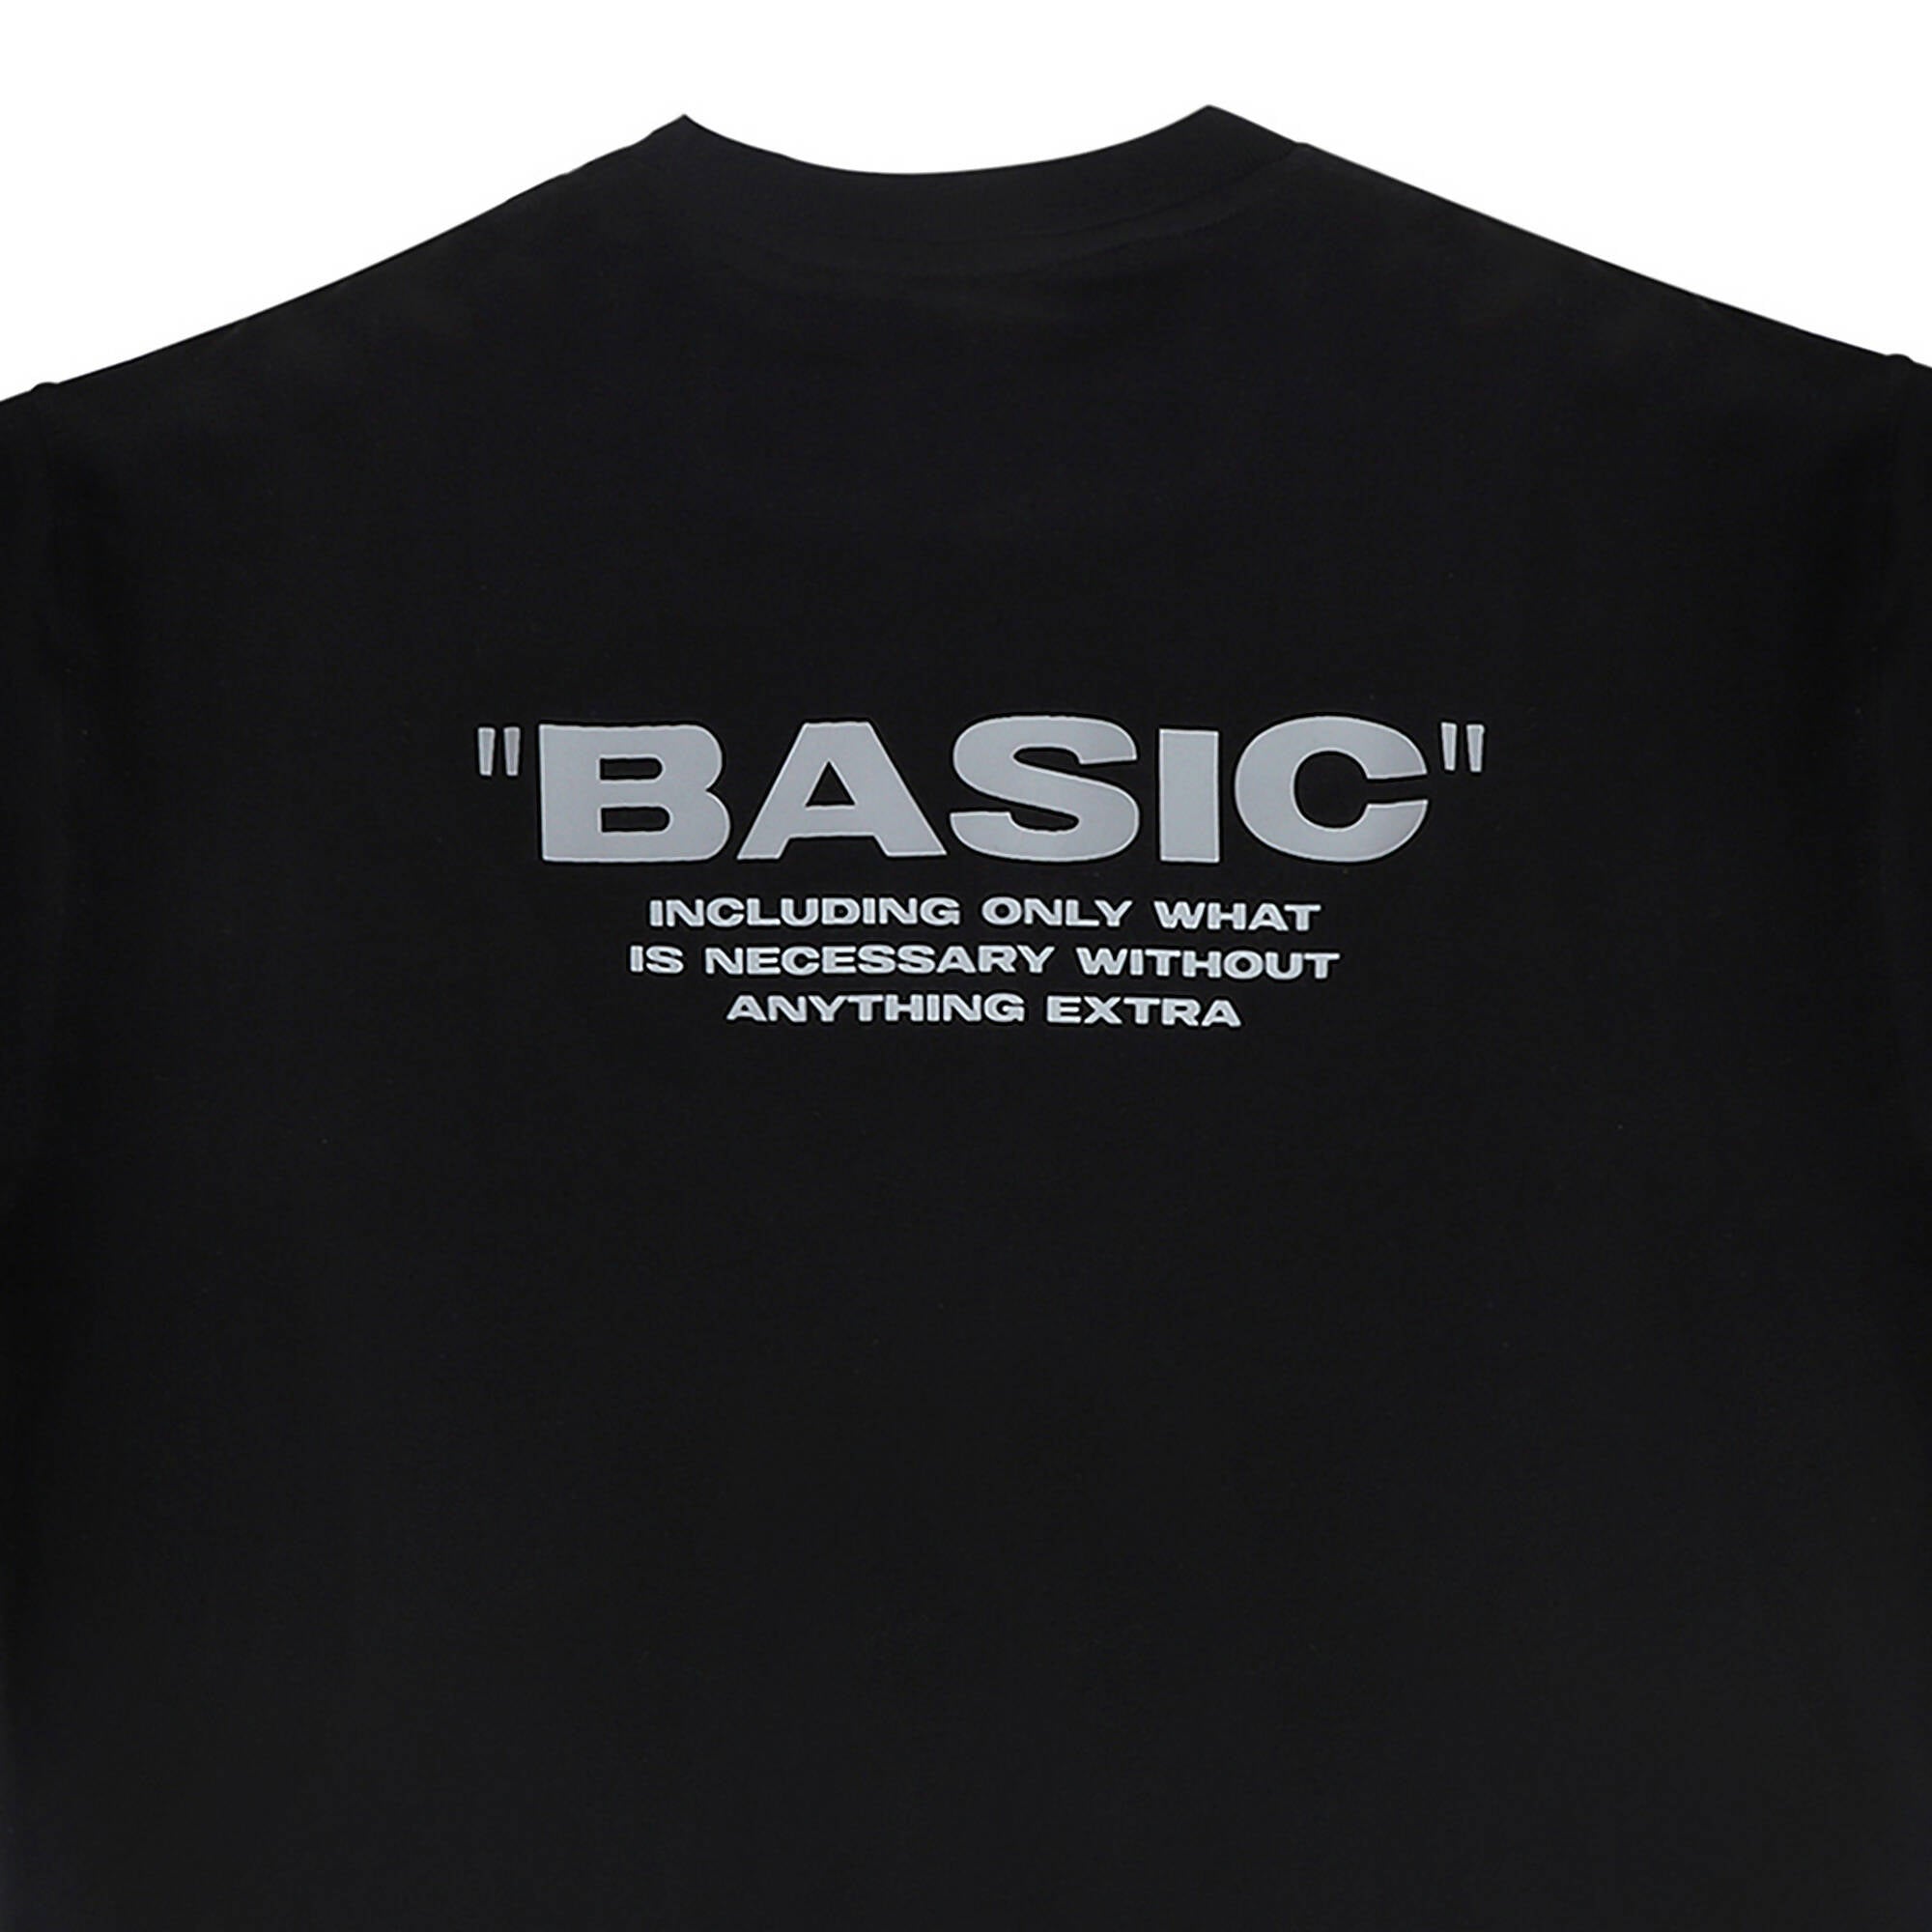 "BASIC" - Catastrophic Black